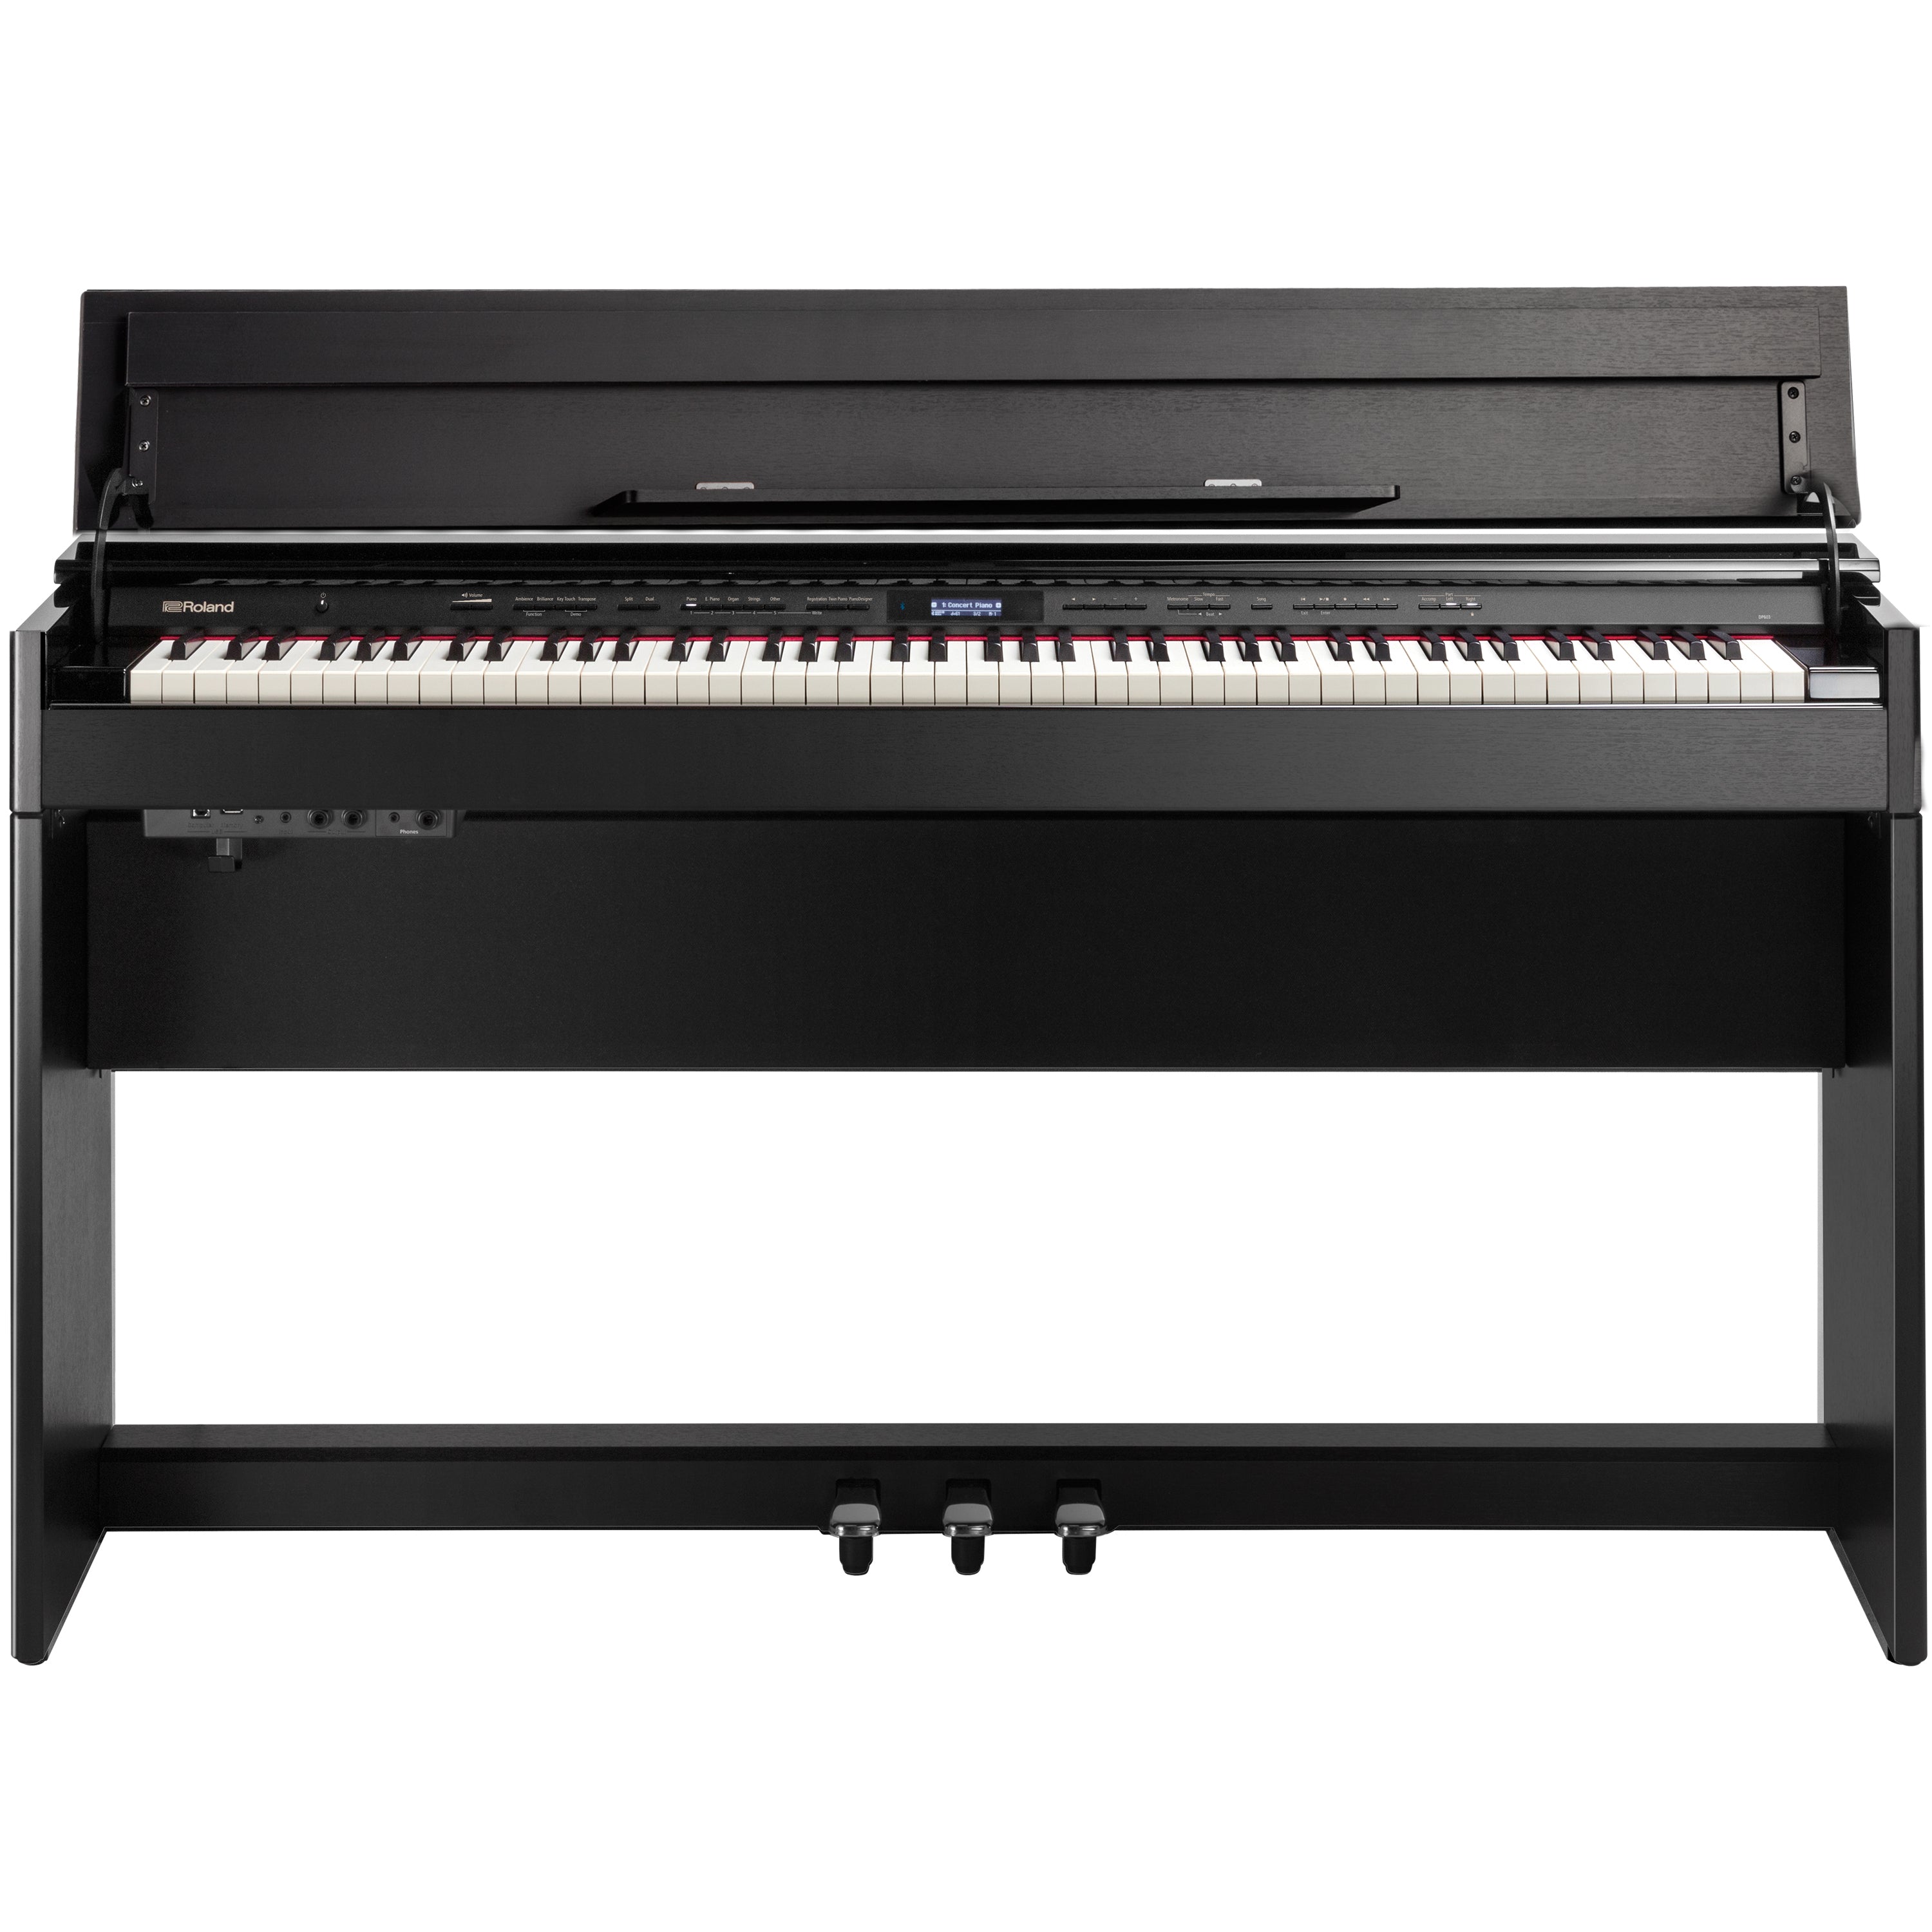 Roland DP603 Digital Piano - Contemporary Black